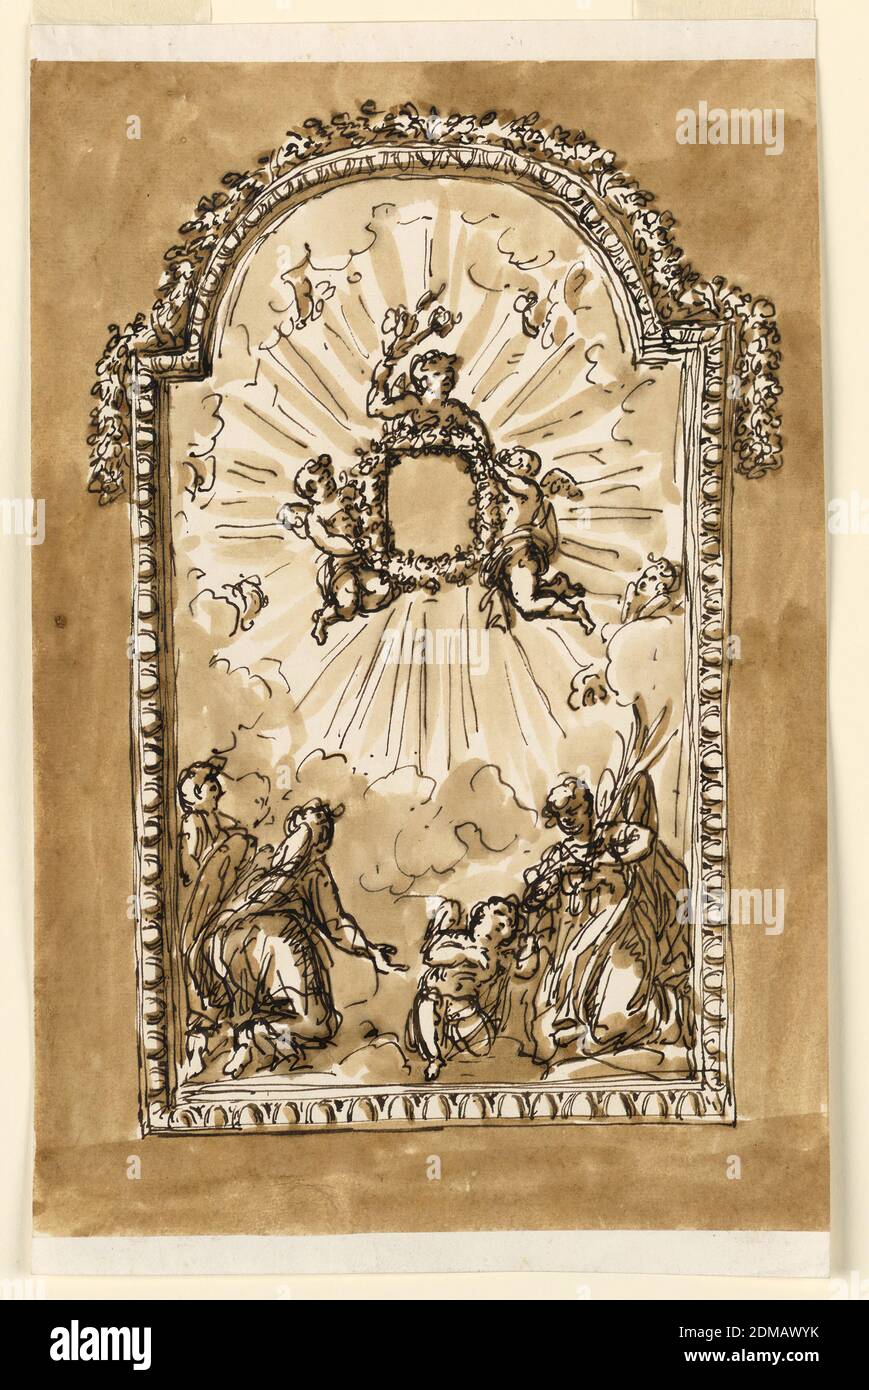 Rahmen für kleines Andachtsbild, Giuseppe Barberi, italienisch, 1746–1809, Feder und braune Tusche, Pinsel und brauner Wasch auf liniertem, weiß gekleidetem Papier, GERAHMTE Darstellung, der obere Rand ist meist kreisförmig. Drei Engel unterstützen einen ovalen Kranz als Rahmen für ein kleines Bild. Es ist umgeben von einer Herrlichkeit von Strahlen und Cherubim. Unten sind vier Engel auf Wolken und die meisten von ihnen verehren. Auf dem oberen Teil des Rahmens befindet sich eine Girlande. Gewöhnlicher Hintergrund., Rom, Italien, 1773-1774, Architektur, Zeichnung Stockfoto